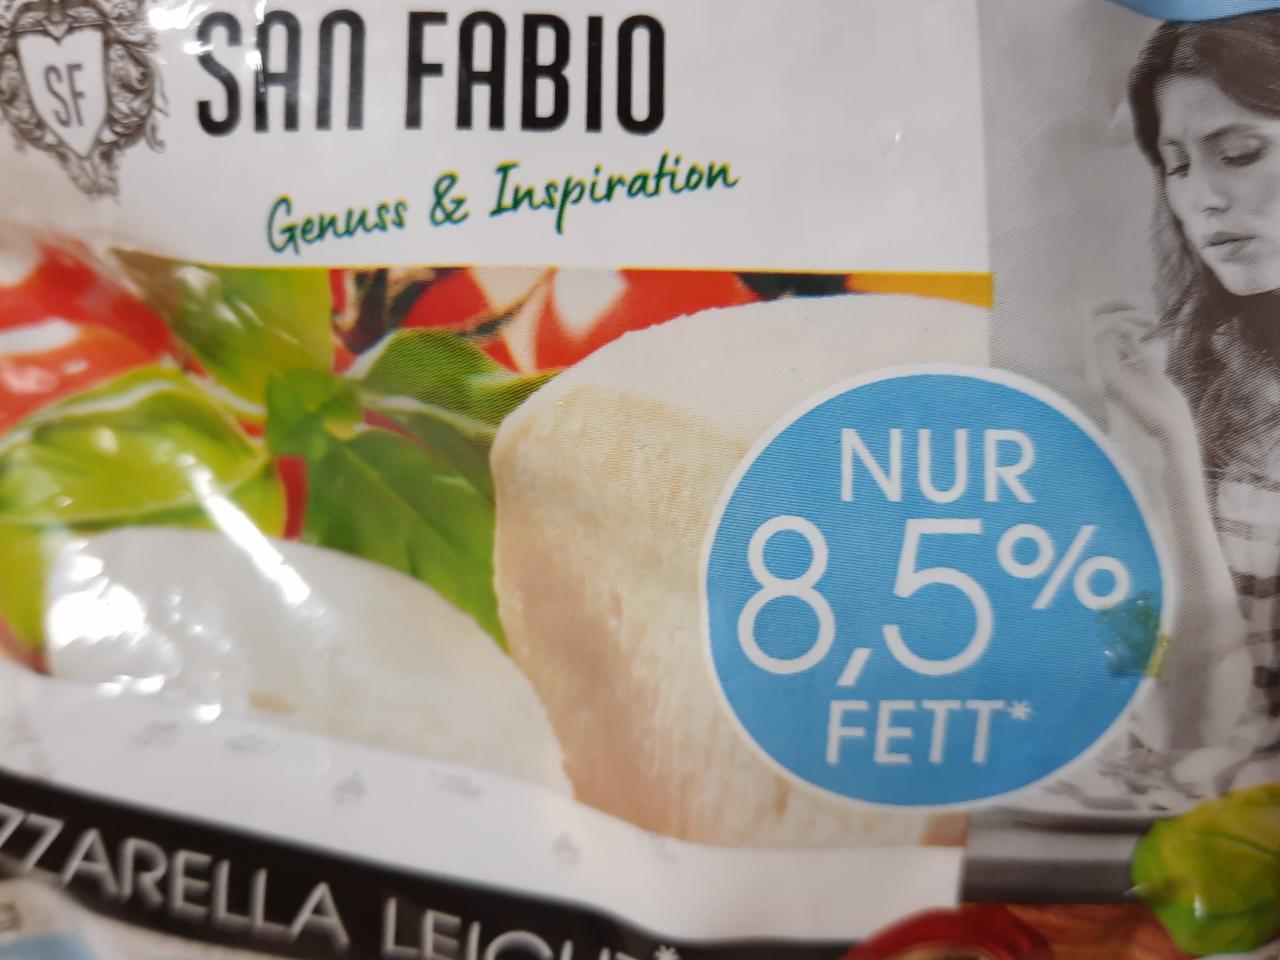 Fotografie - Mozzarella leicht 8,5% fett San Fabio